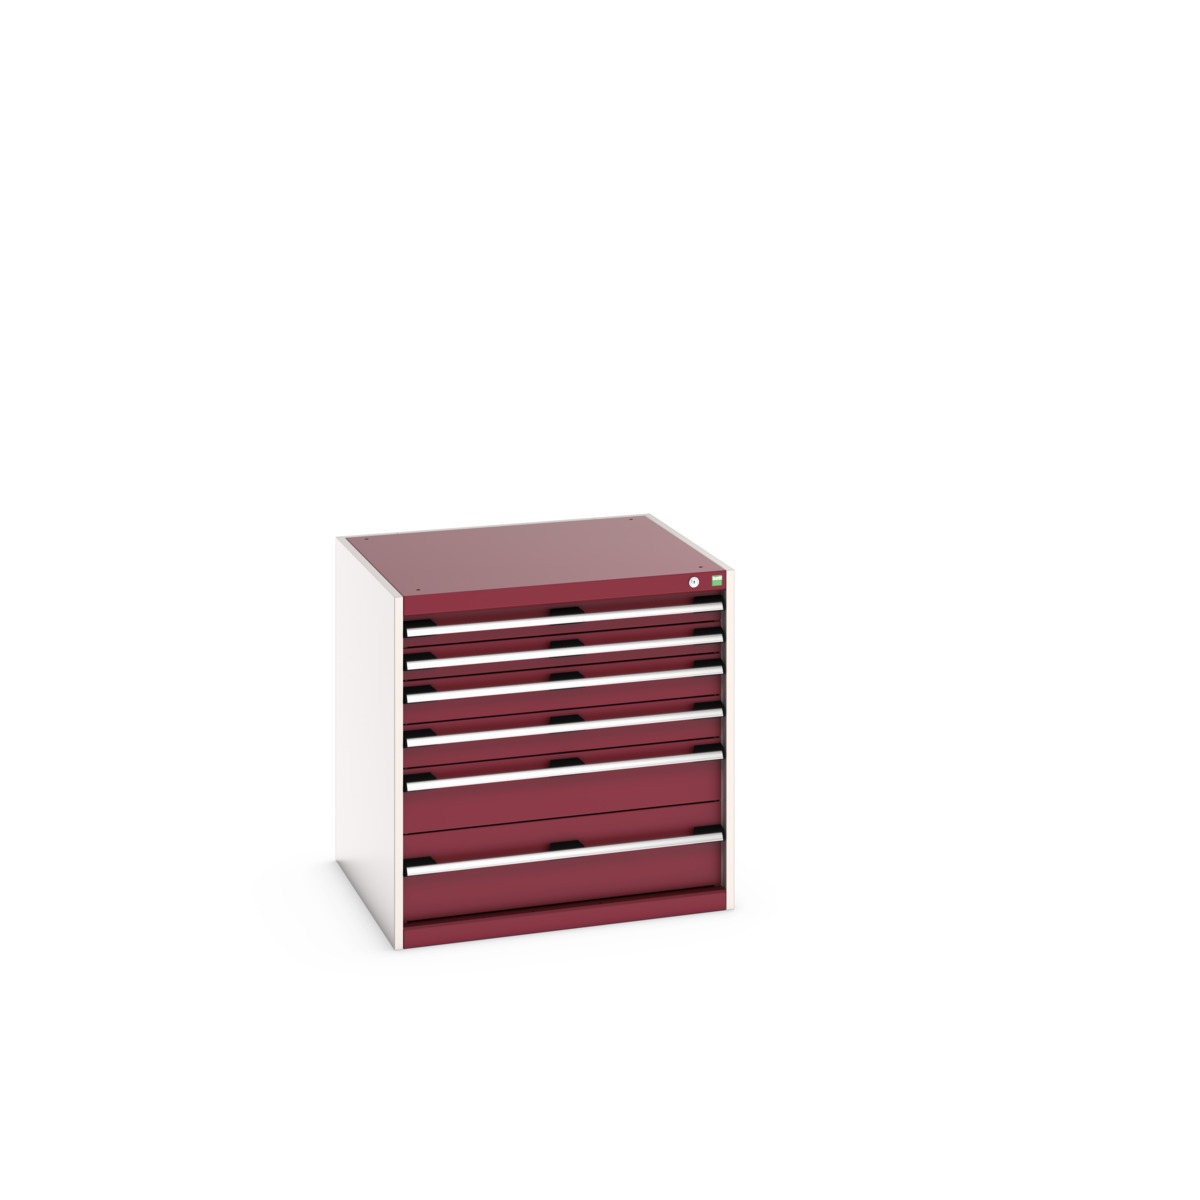 40028088.24V - cubio drawer cabinet